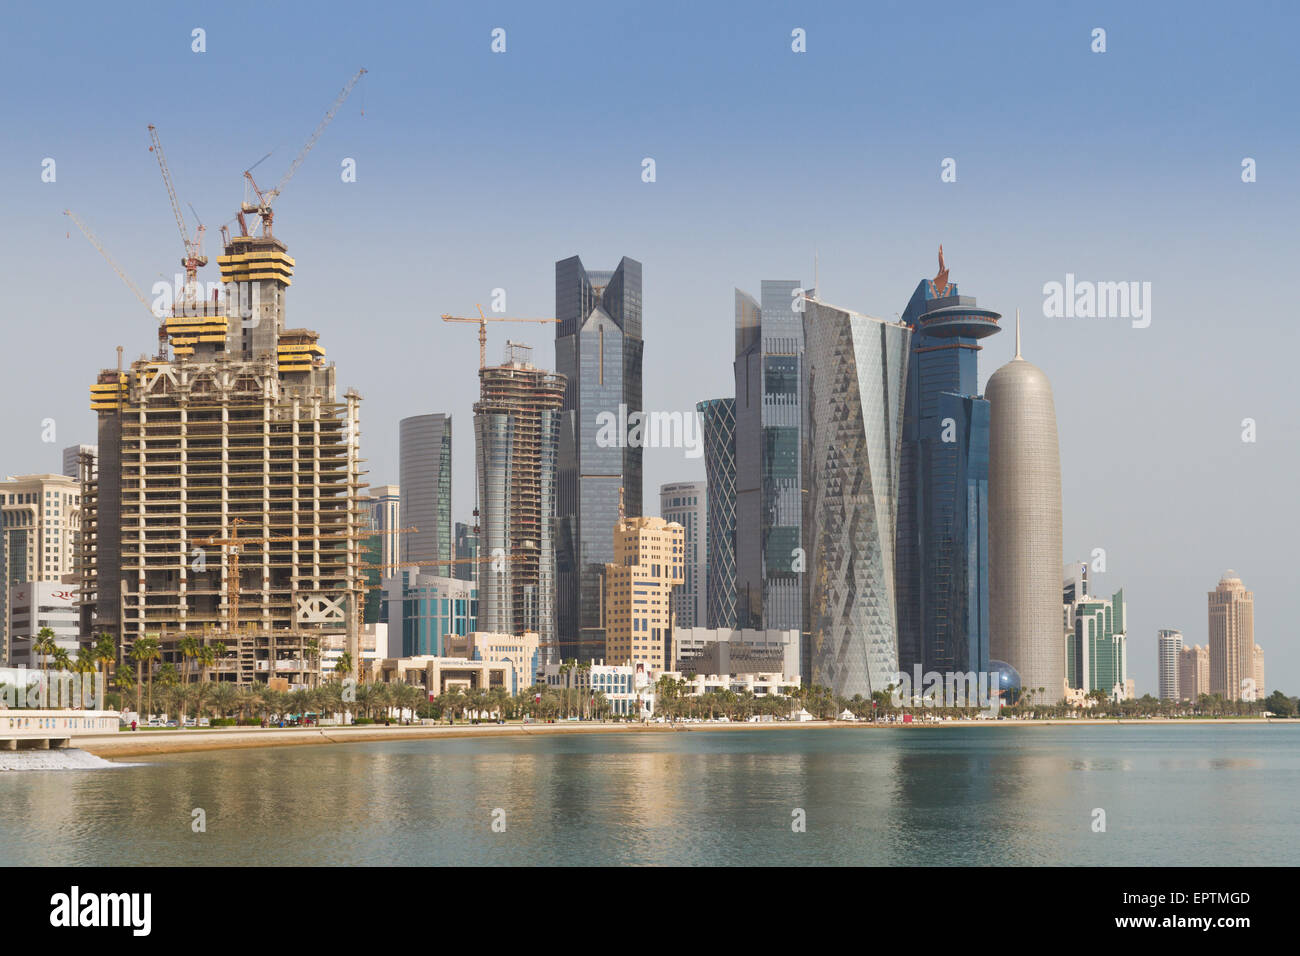 Doha skyscrapers: Dubai Towers, Al Bidda Tower, WTC Doha & Burj Qatar Stock Photo